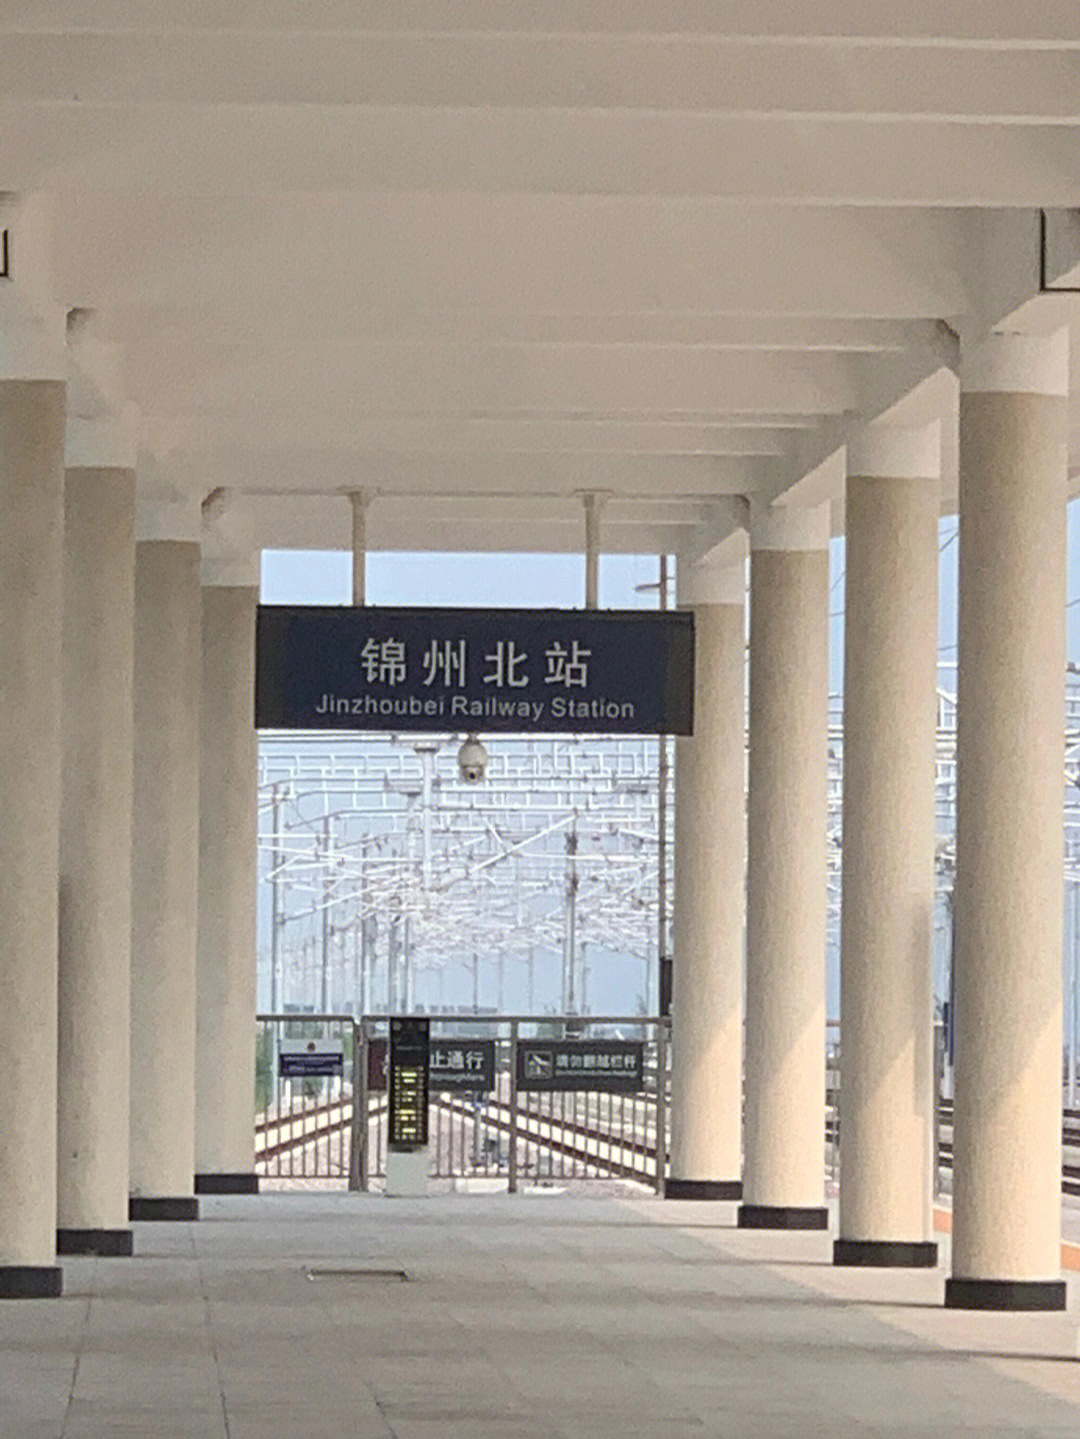 至锦州北站(价位大概在90～110元,每天有很多趟列车)在锦州站附近住